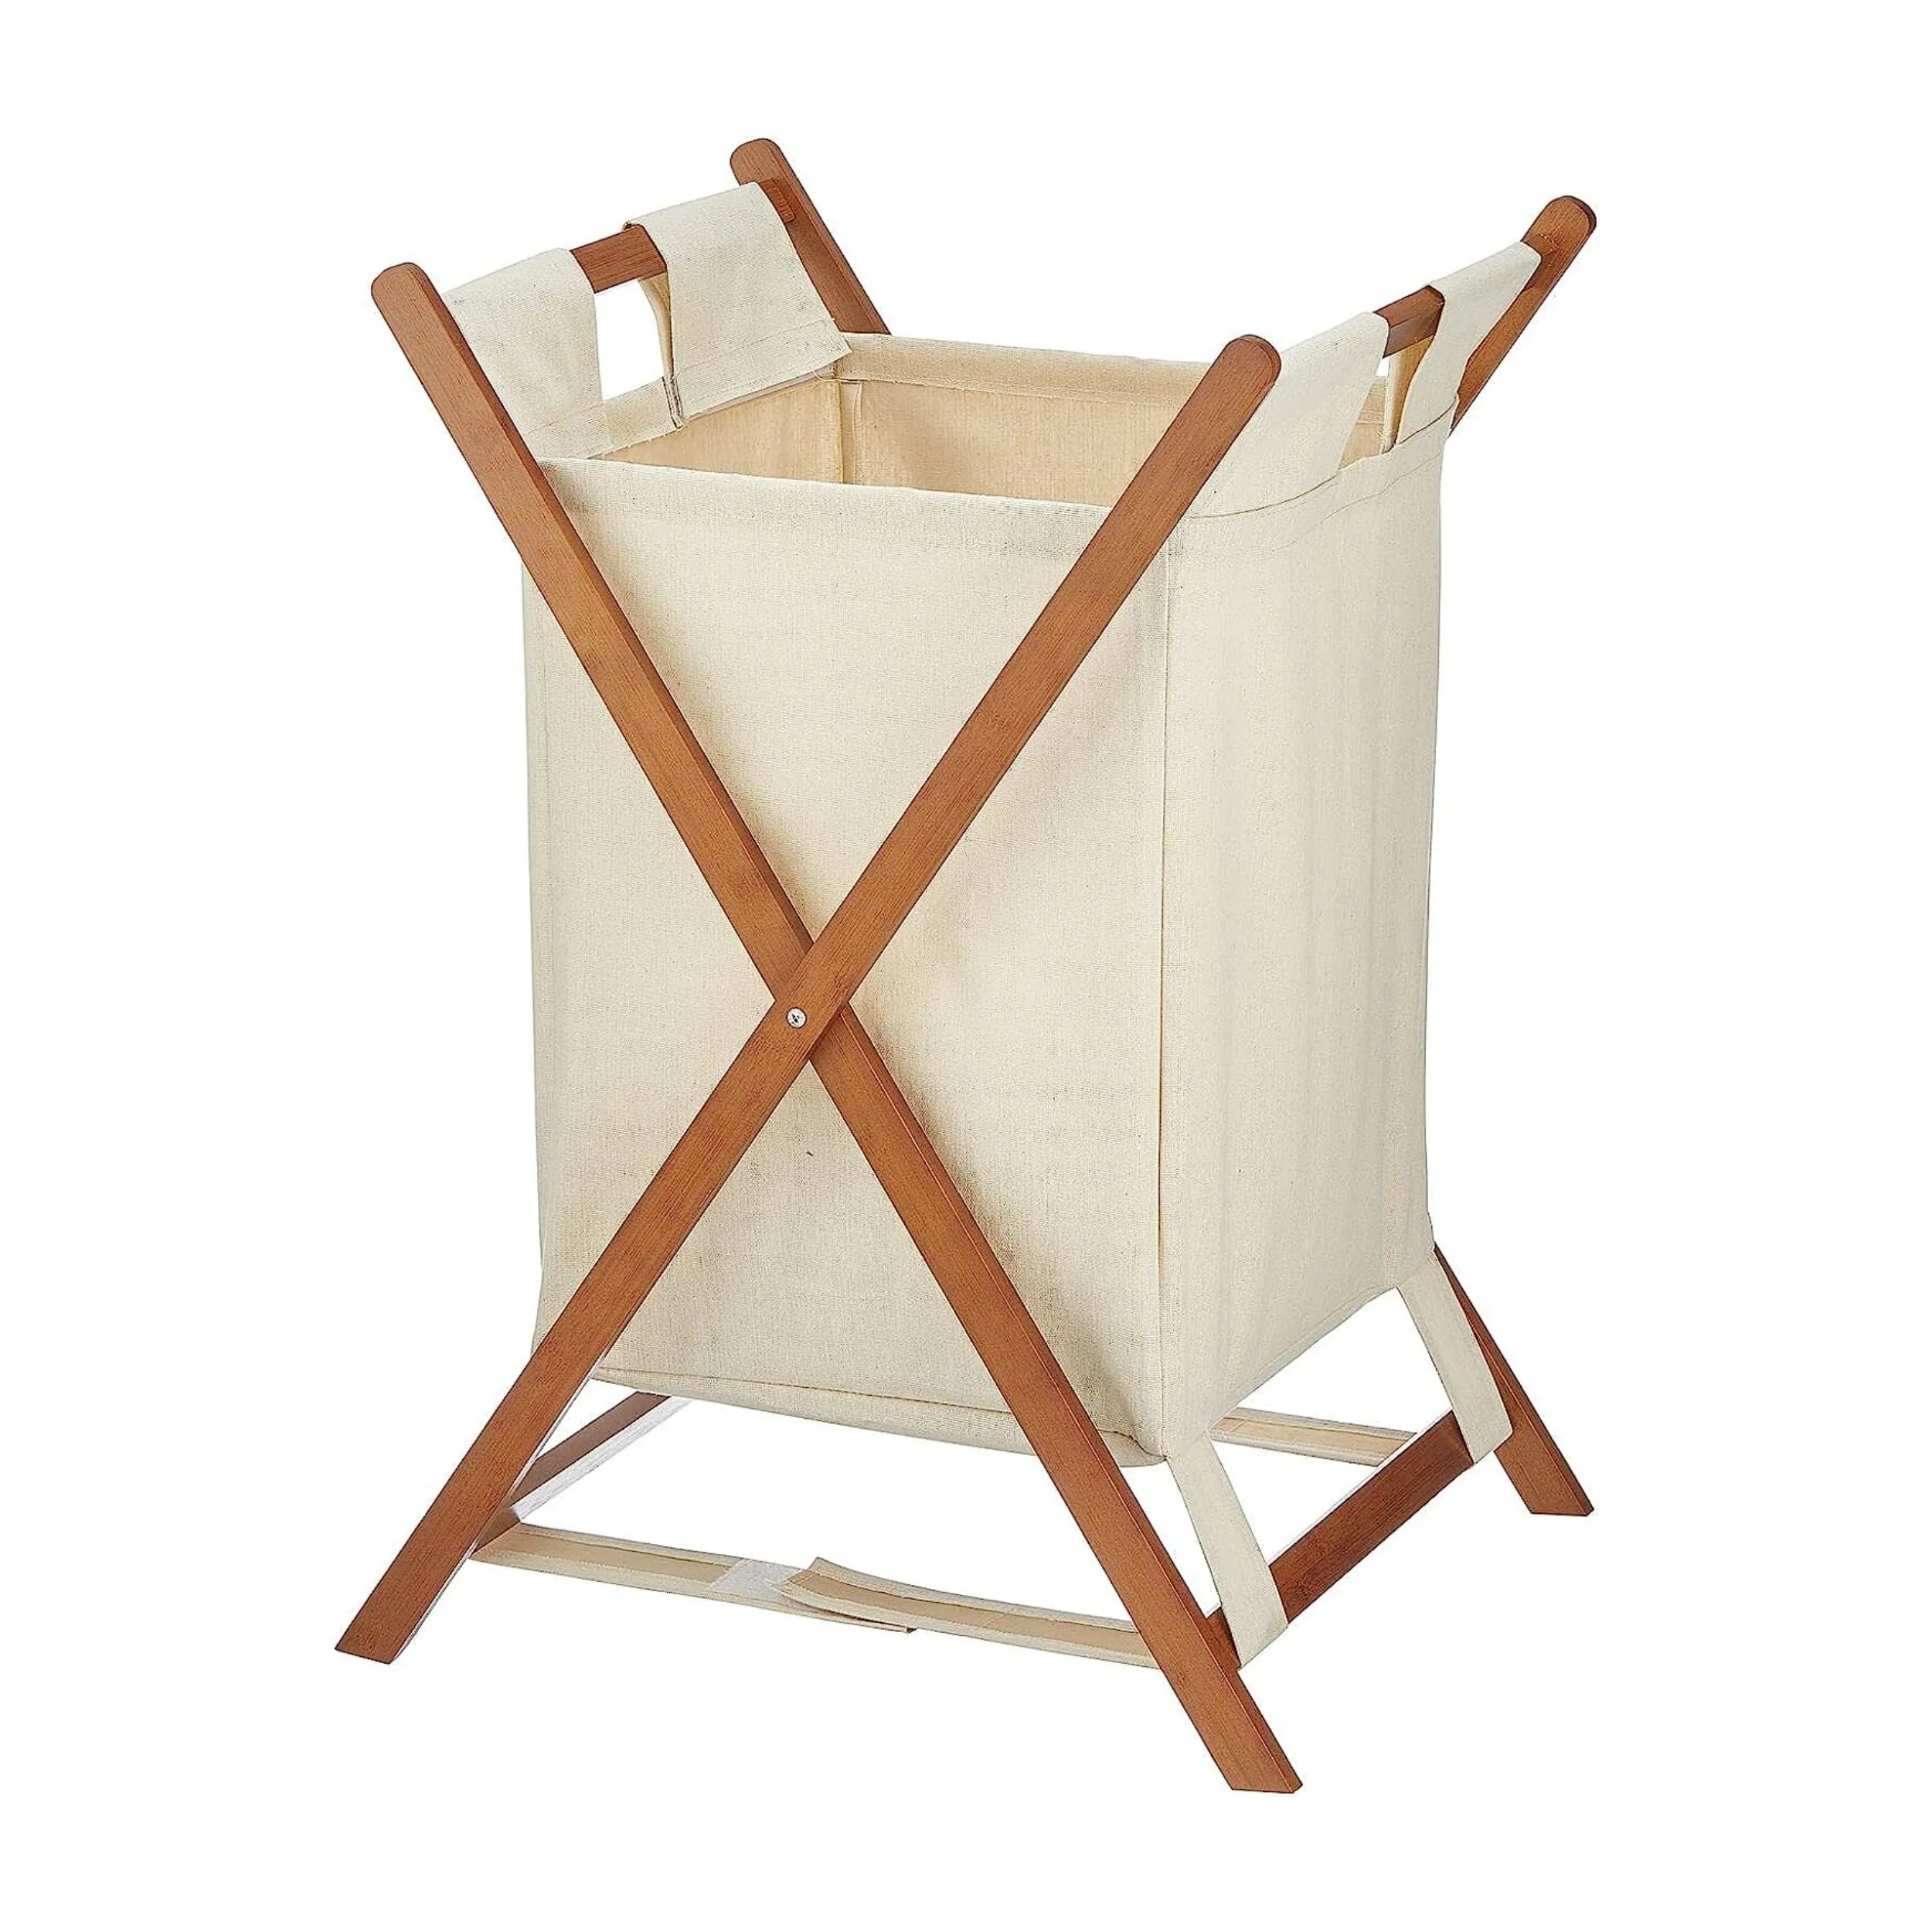 Organización de lavandería y bolsa de almacenamiento Cesta de lavandería de bambú impermeable plegable Cesto para bolsas de ropa sucia